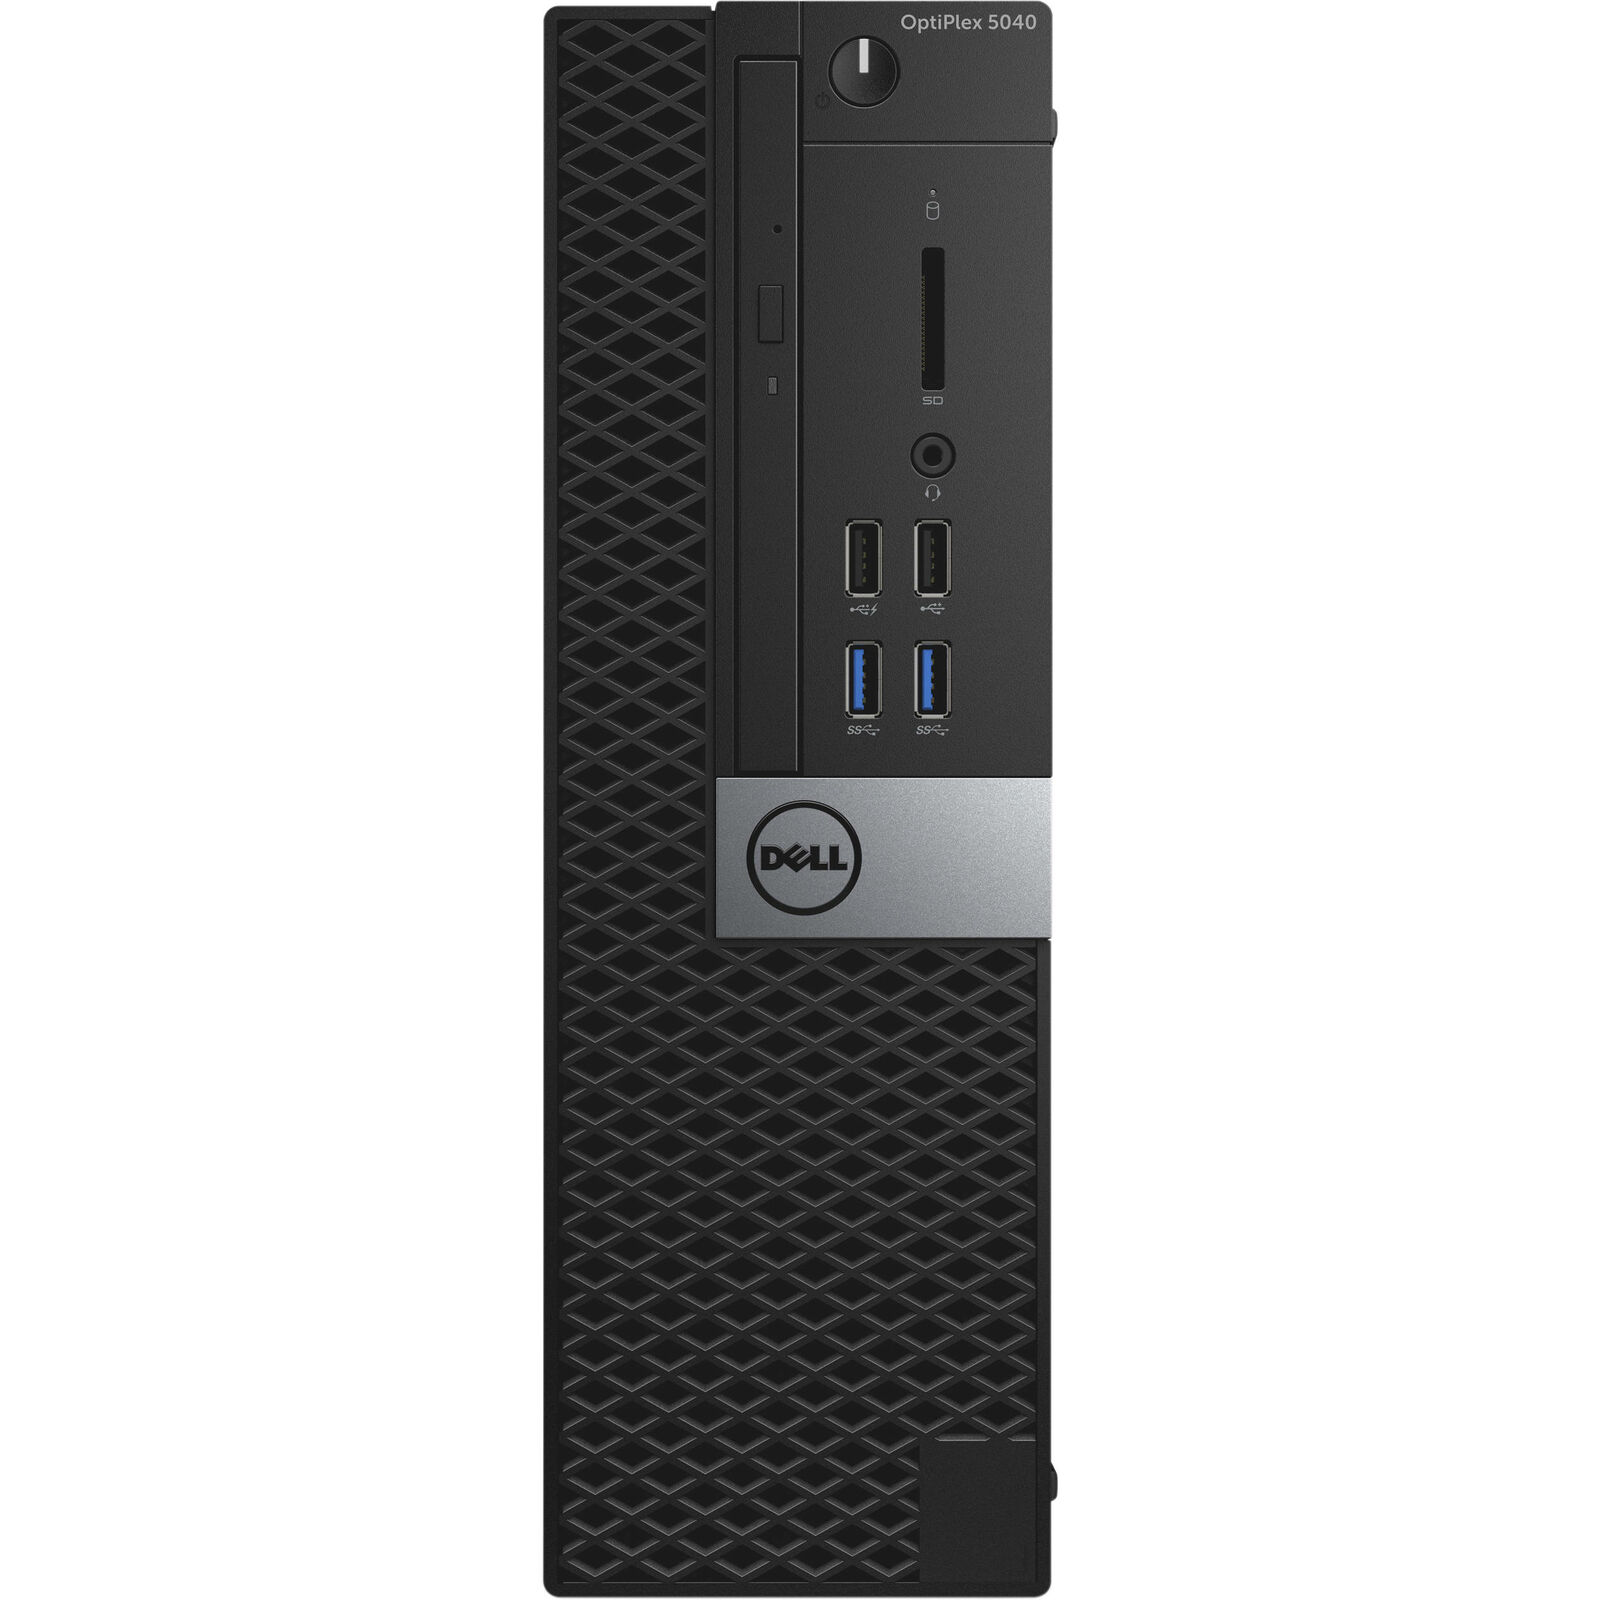 Dell Optiplex 5040 SFF Intel Core i5-6500 3.2GHz 8GB 256GB DVD W10P